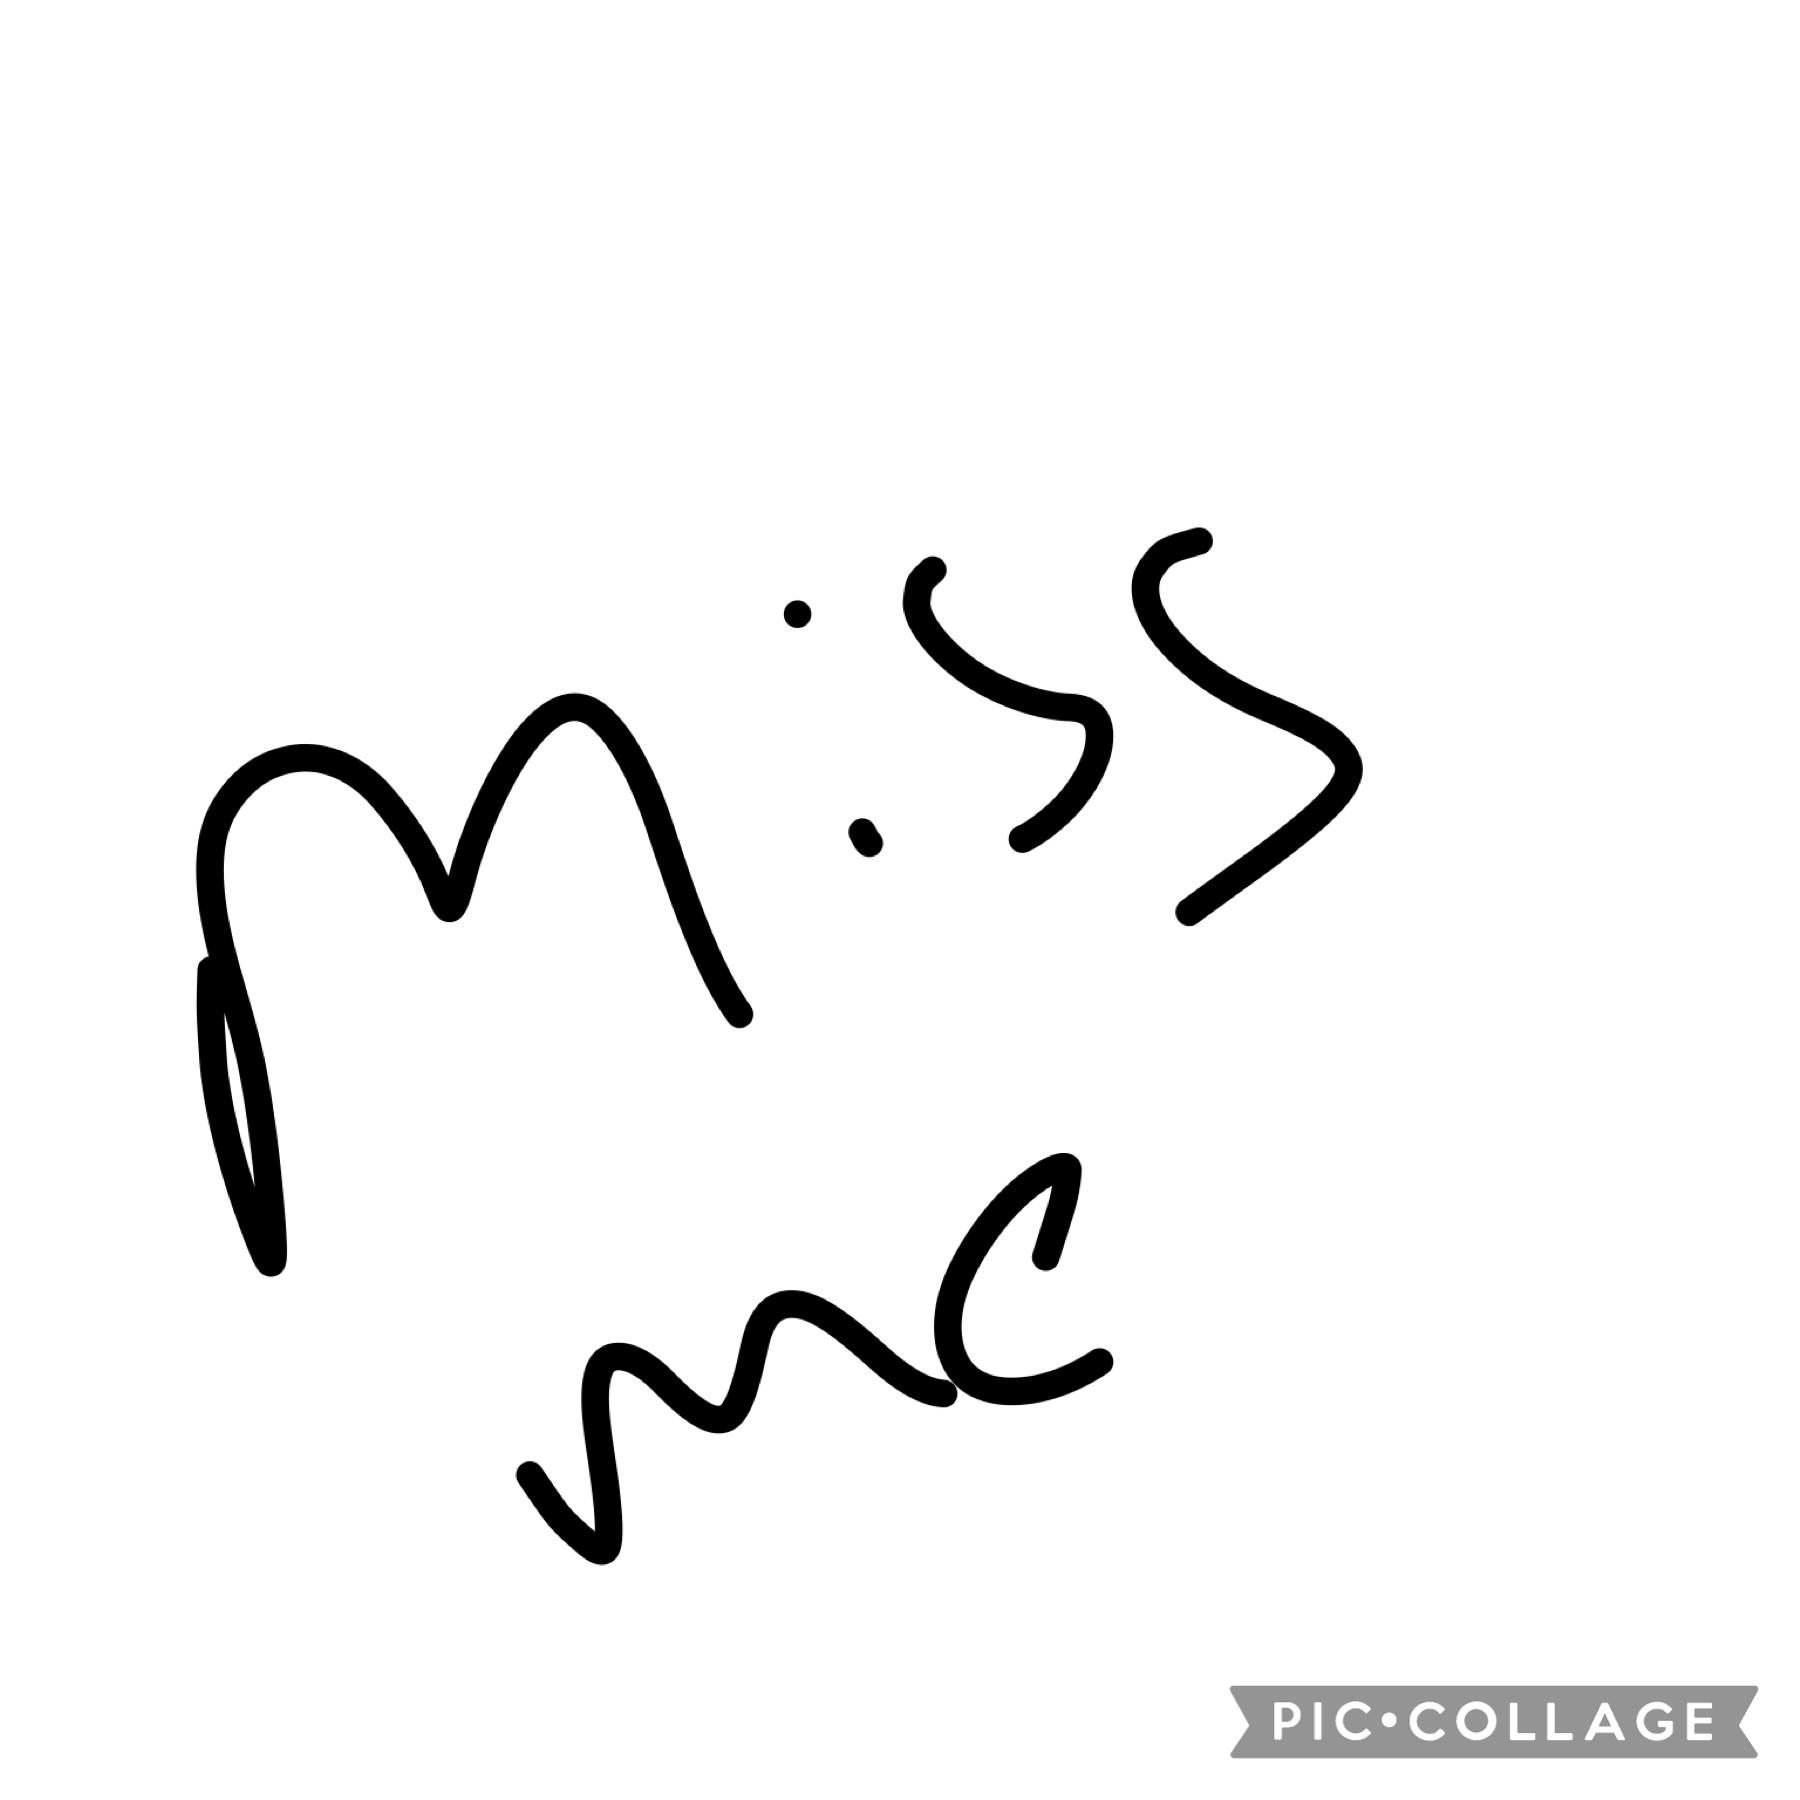 Miss me 💇🏽‍♀️